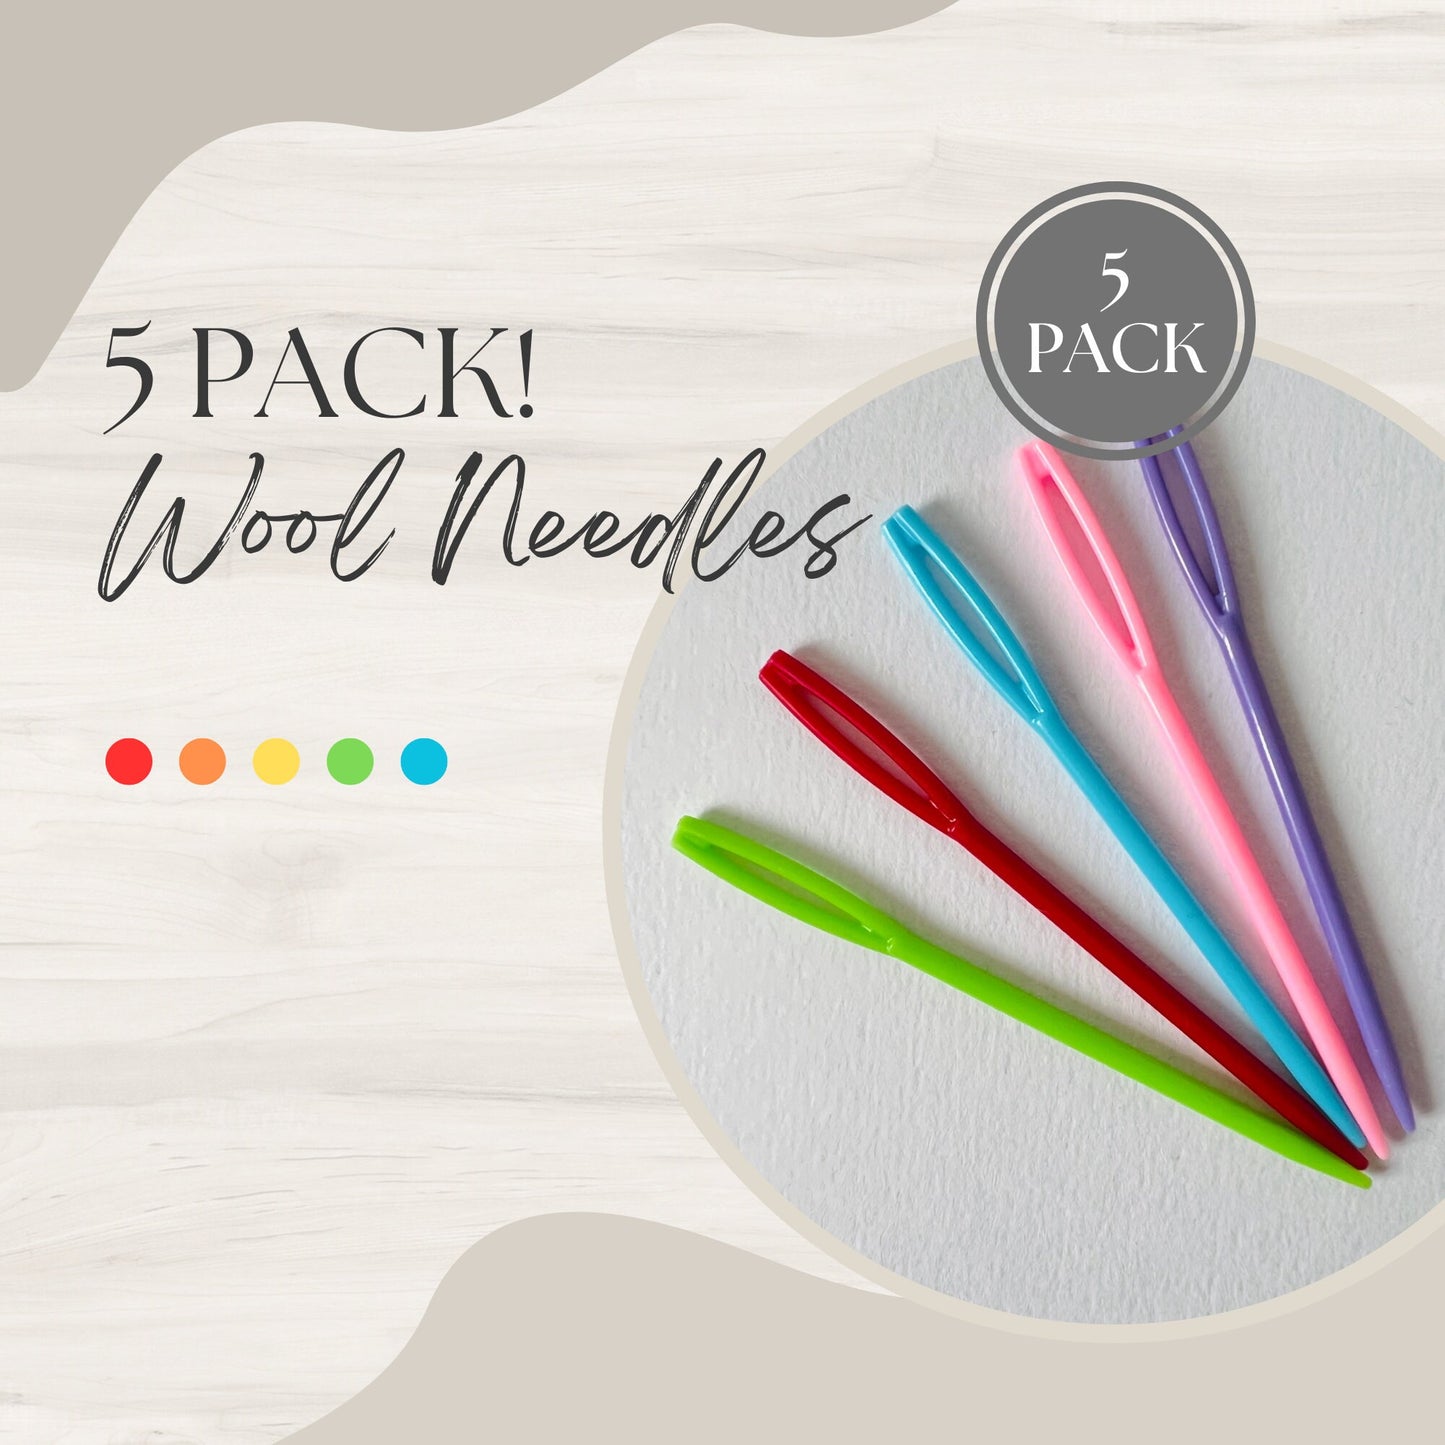 5 Pack wool sewing needles